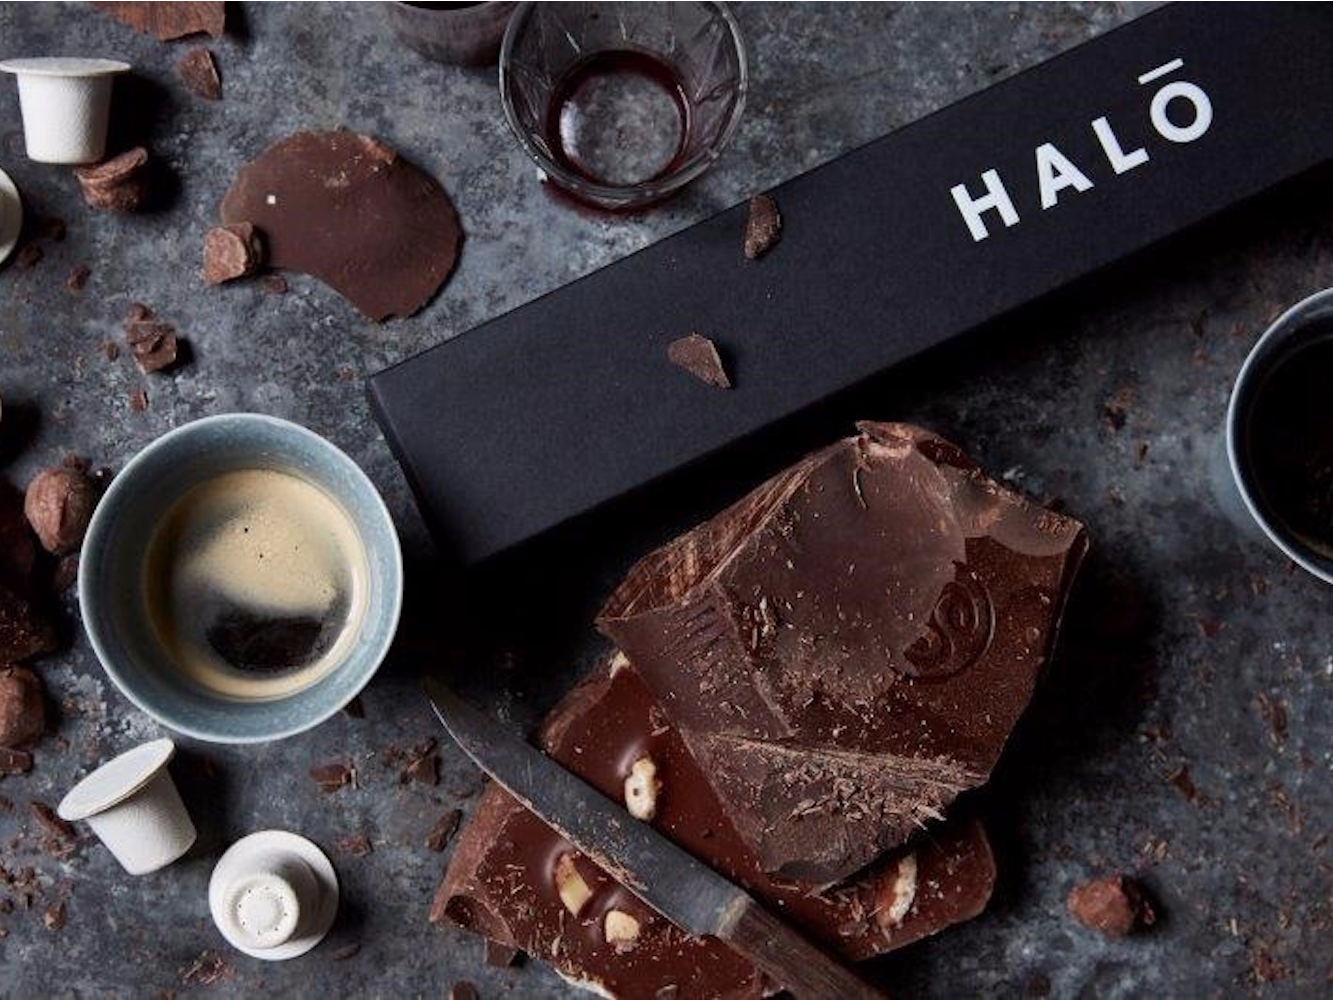 英国生态咖啡品牌 Halo 推出世界首款可快速降解的咖啡胶囊